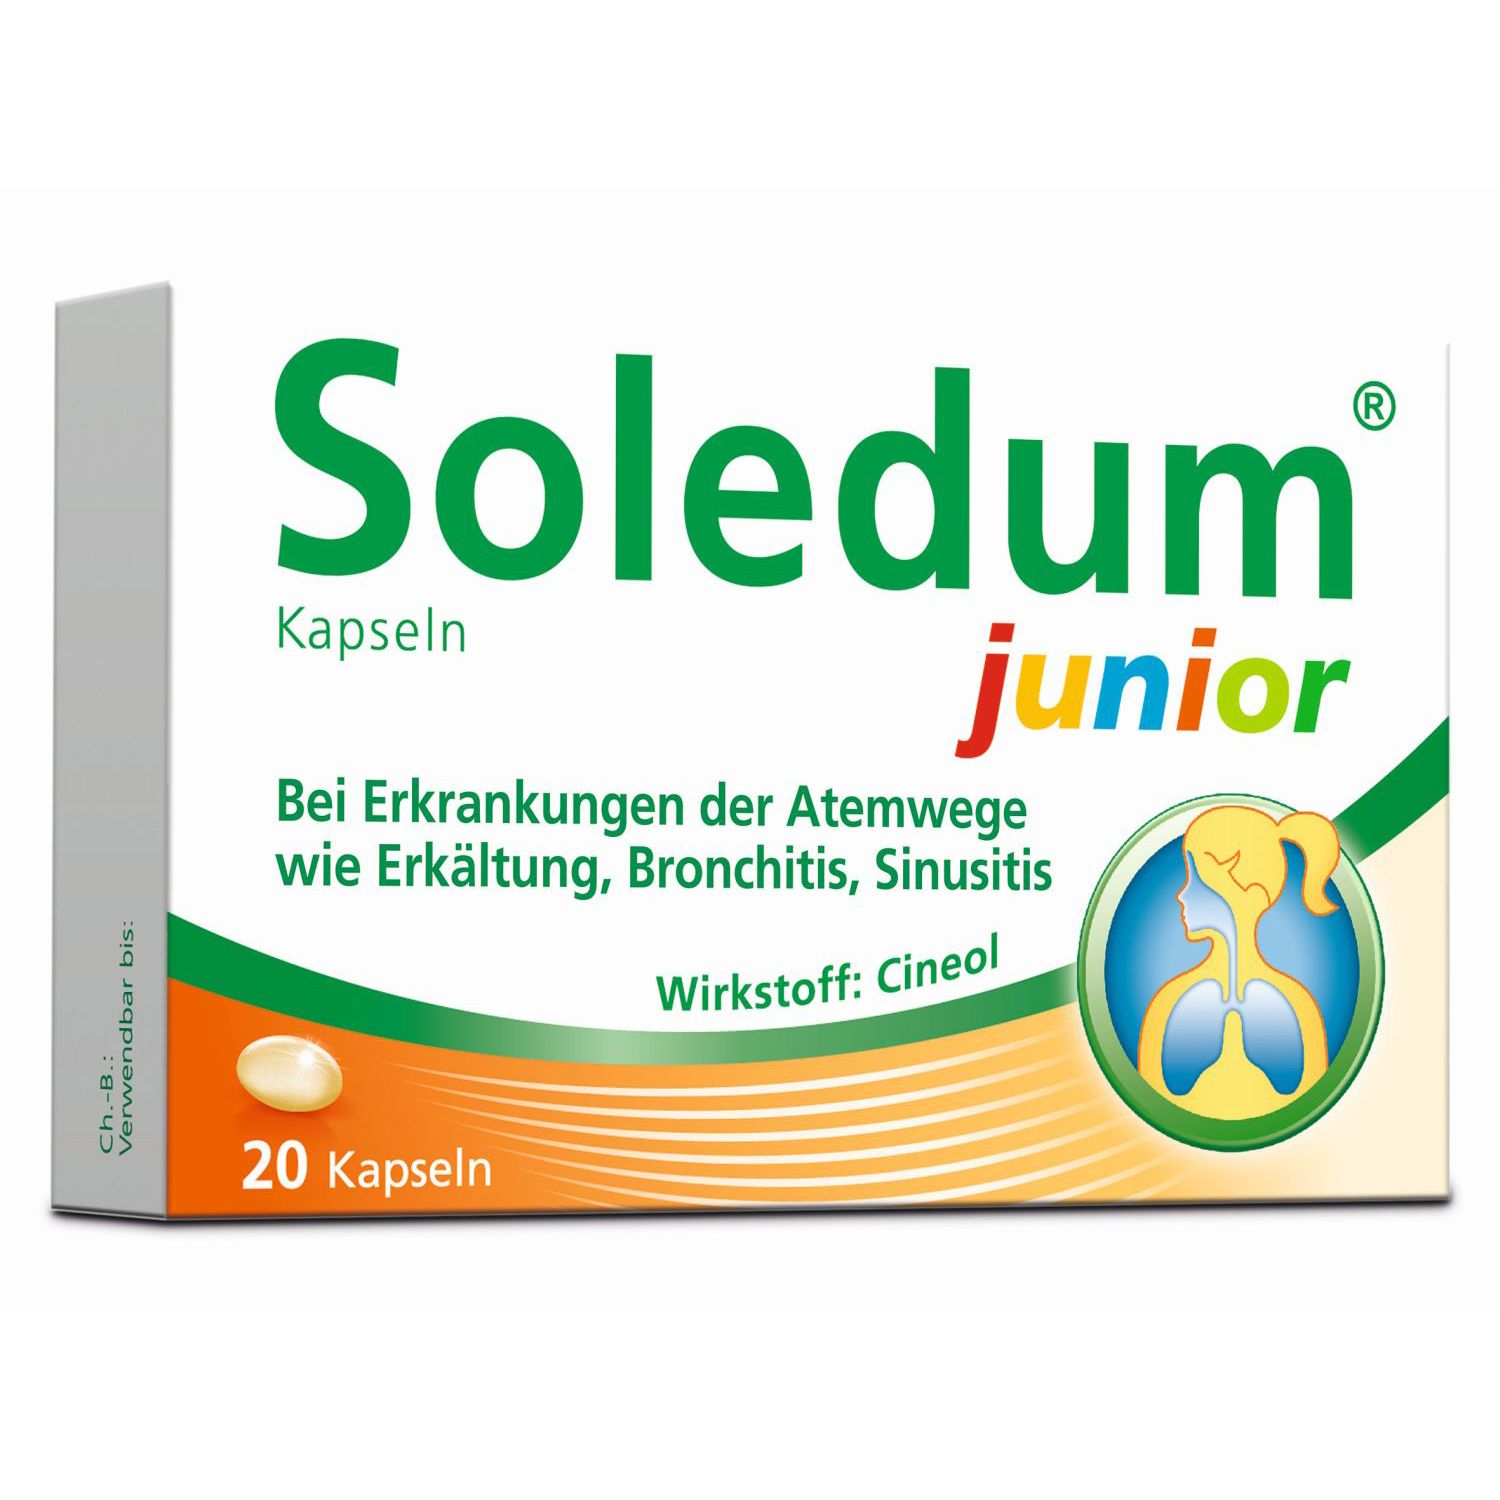 Soledum® Kapseln junior bei Erkältung, Bronchitis & Sinusitis